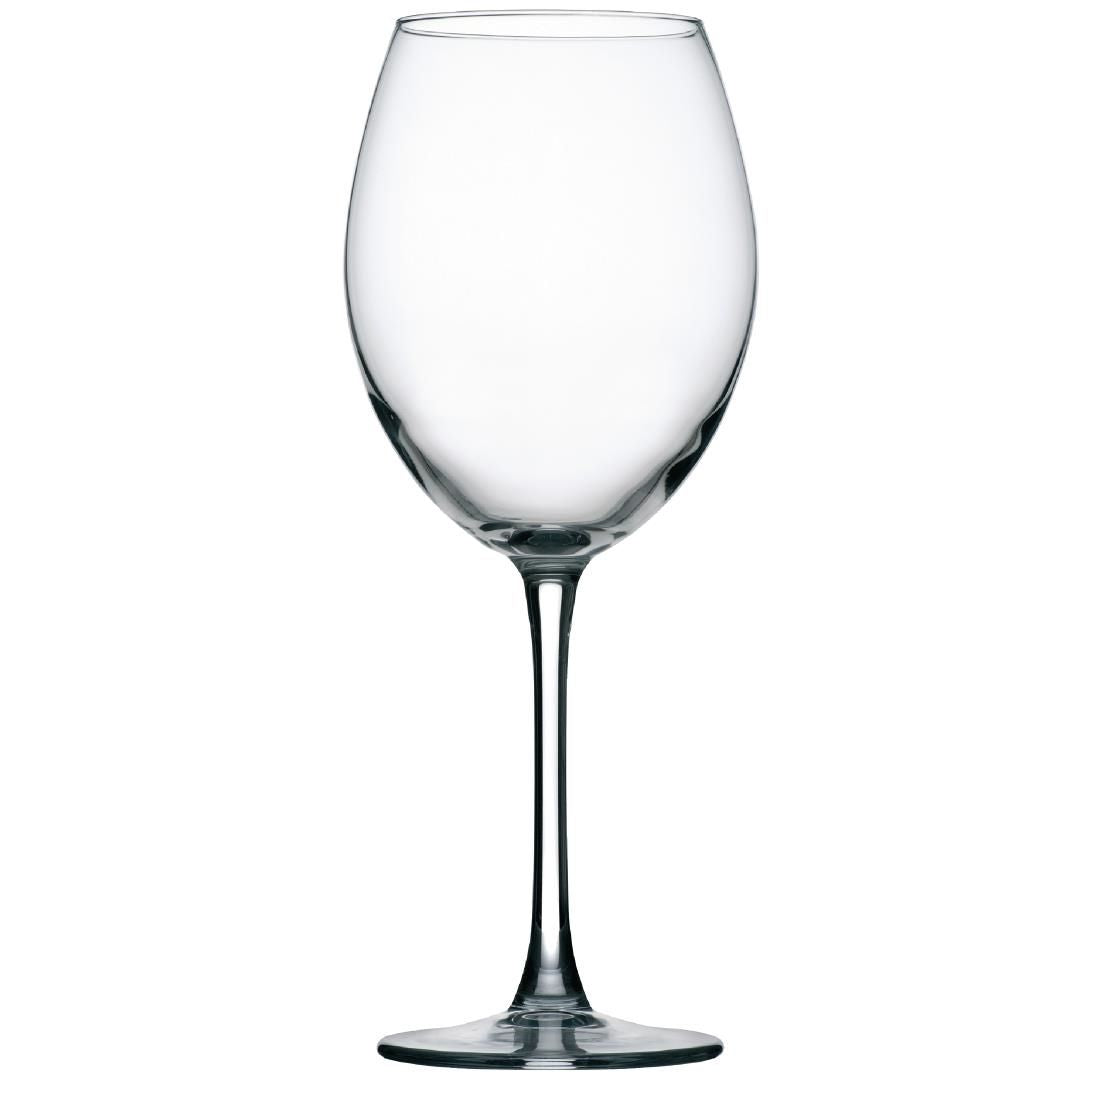 Y697 Utopia Enoteca Red Wine Glasses 550ml (Pack of 12)